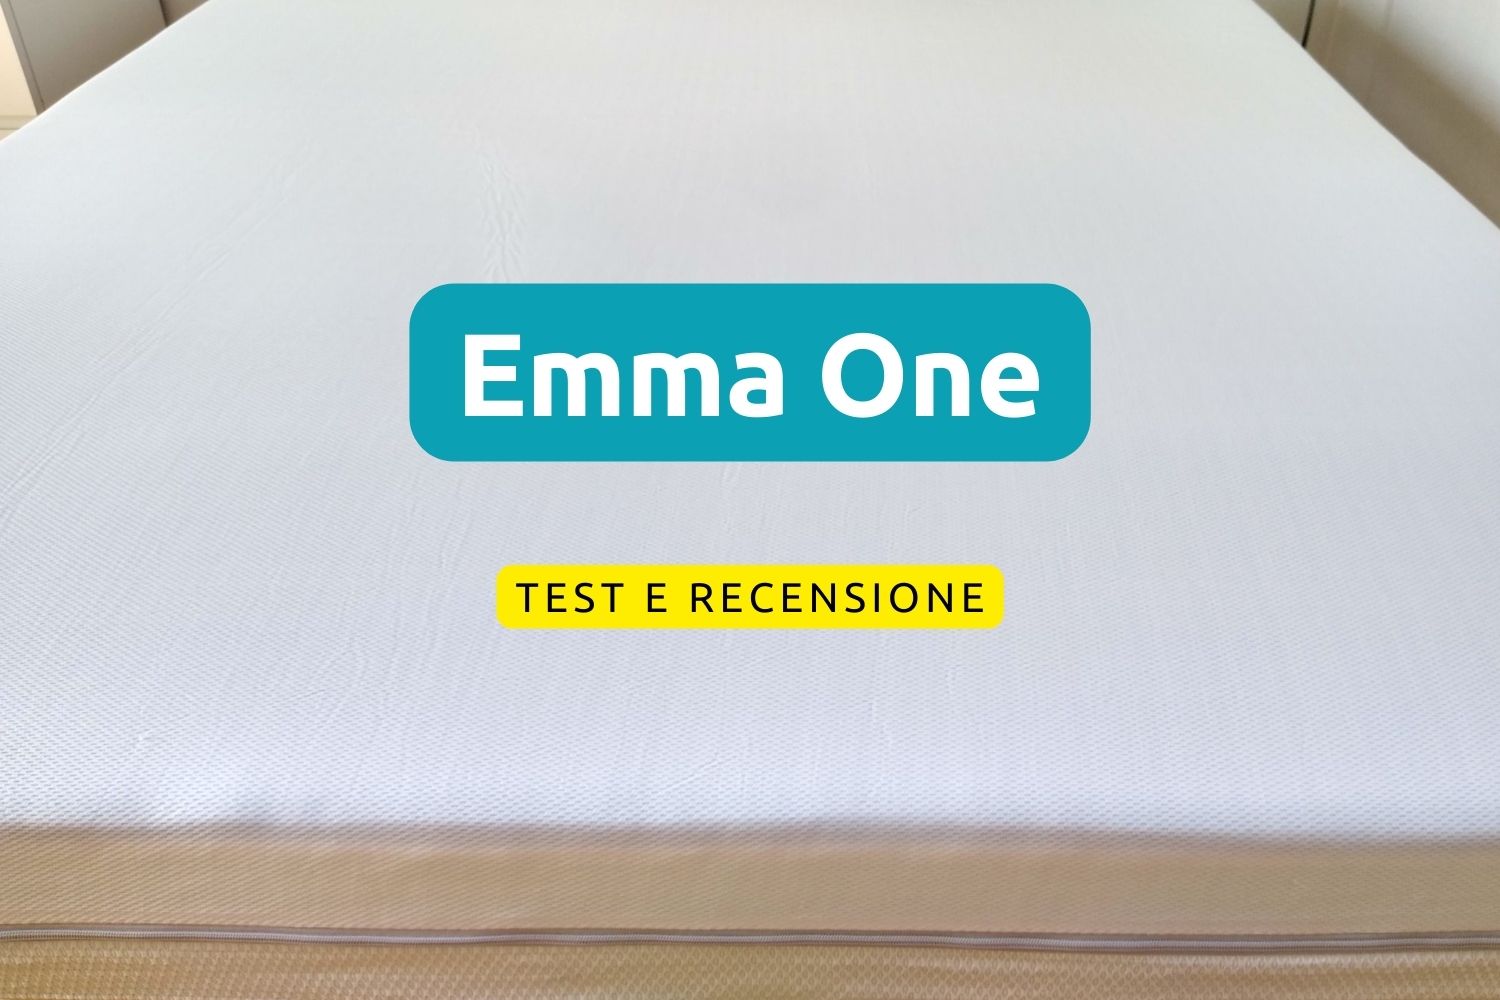 Emma One, test e recensione